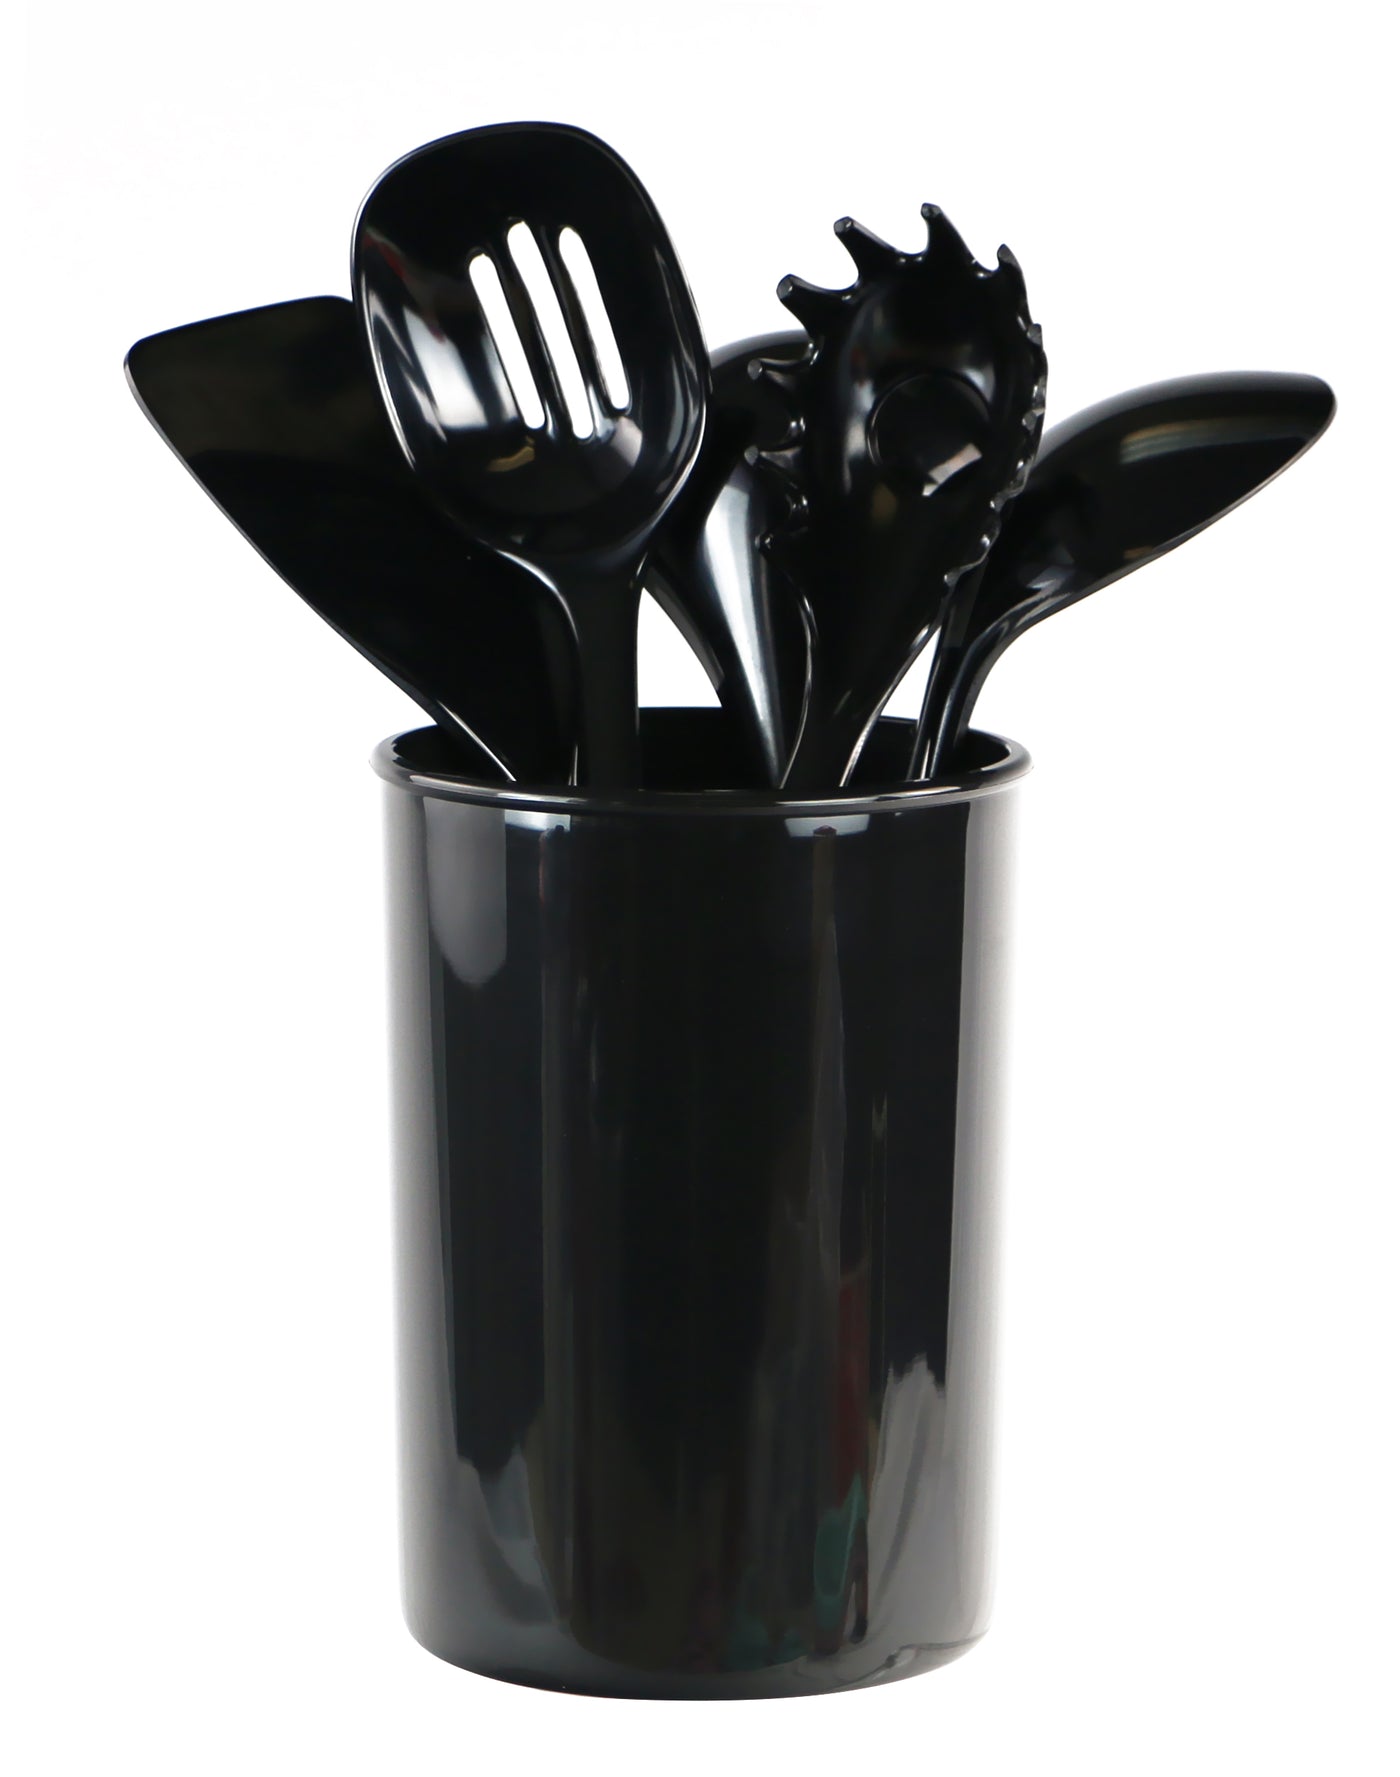 X-Large Plastic Utensil Holder, Black – Reston Lloyd